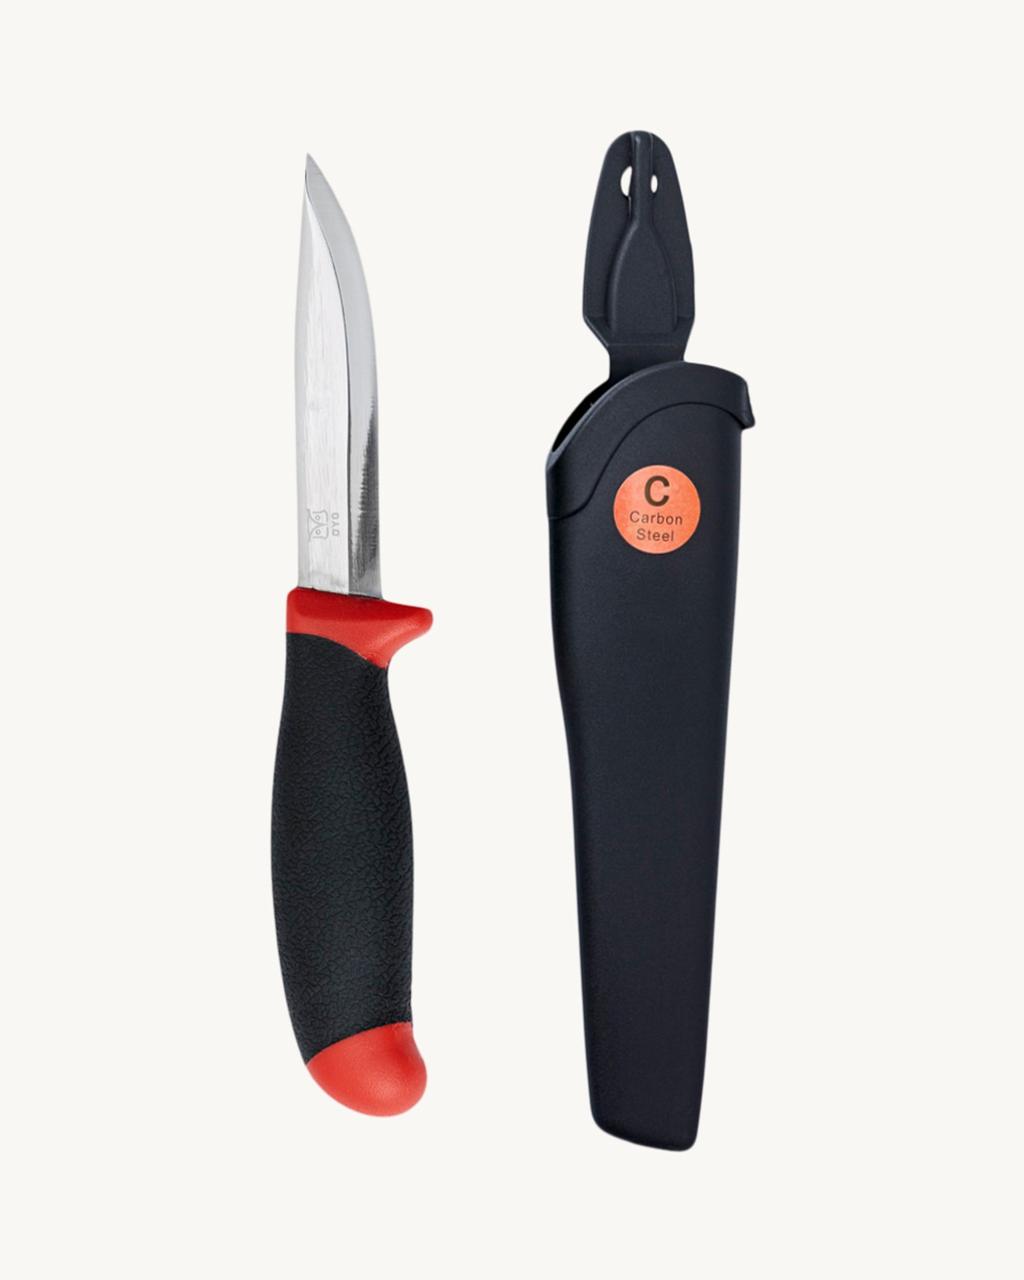 Knife in Carbon steel w/sheat